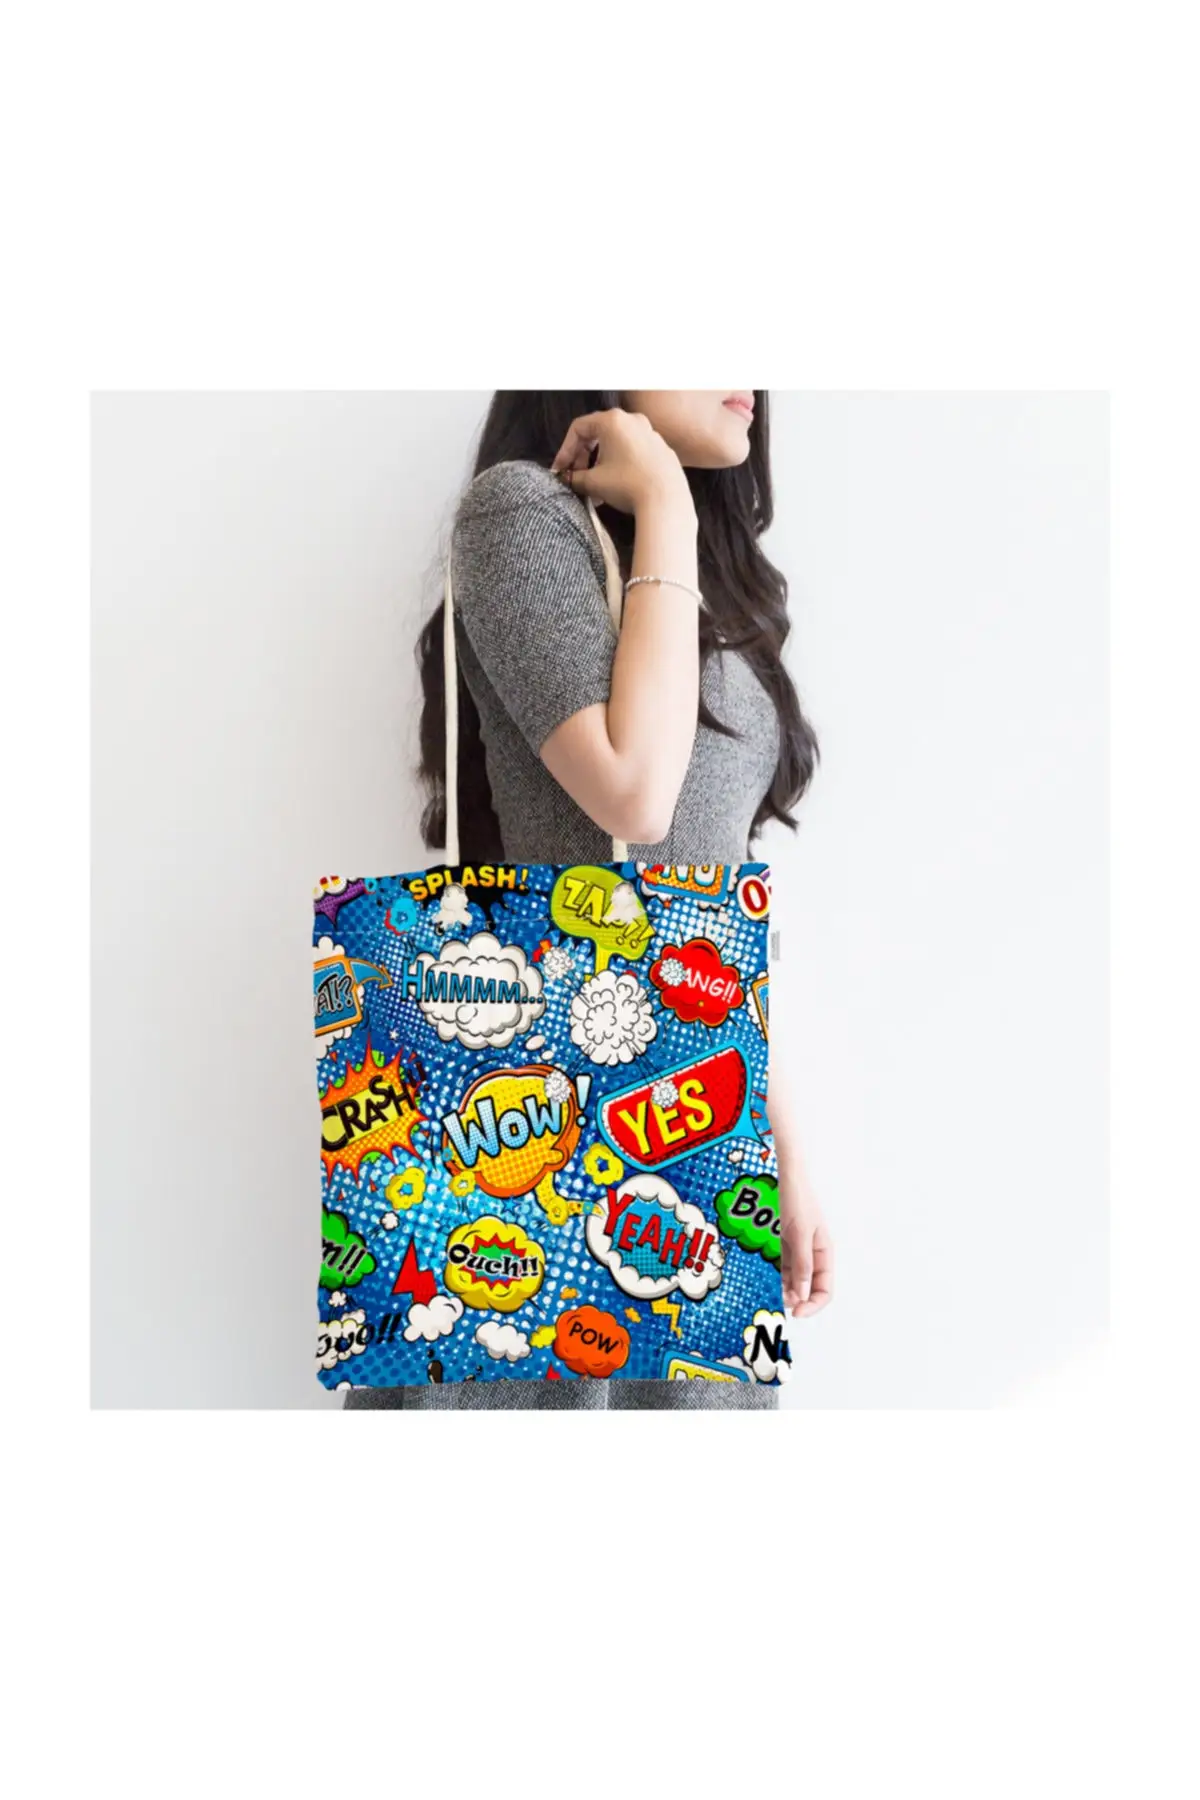 

Женская пляжная сумка, индивидуальный дизайн, цифровая печать, ткань на молнии с поп-артом на синем фоне, летняя сумка-тоут